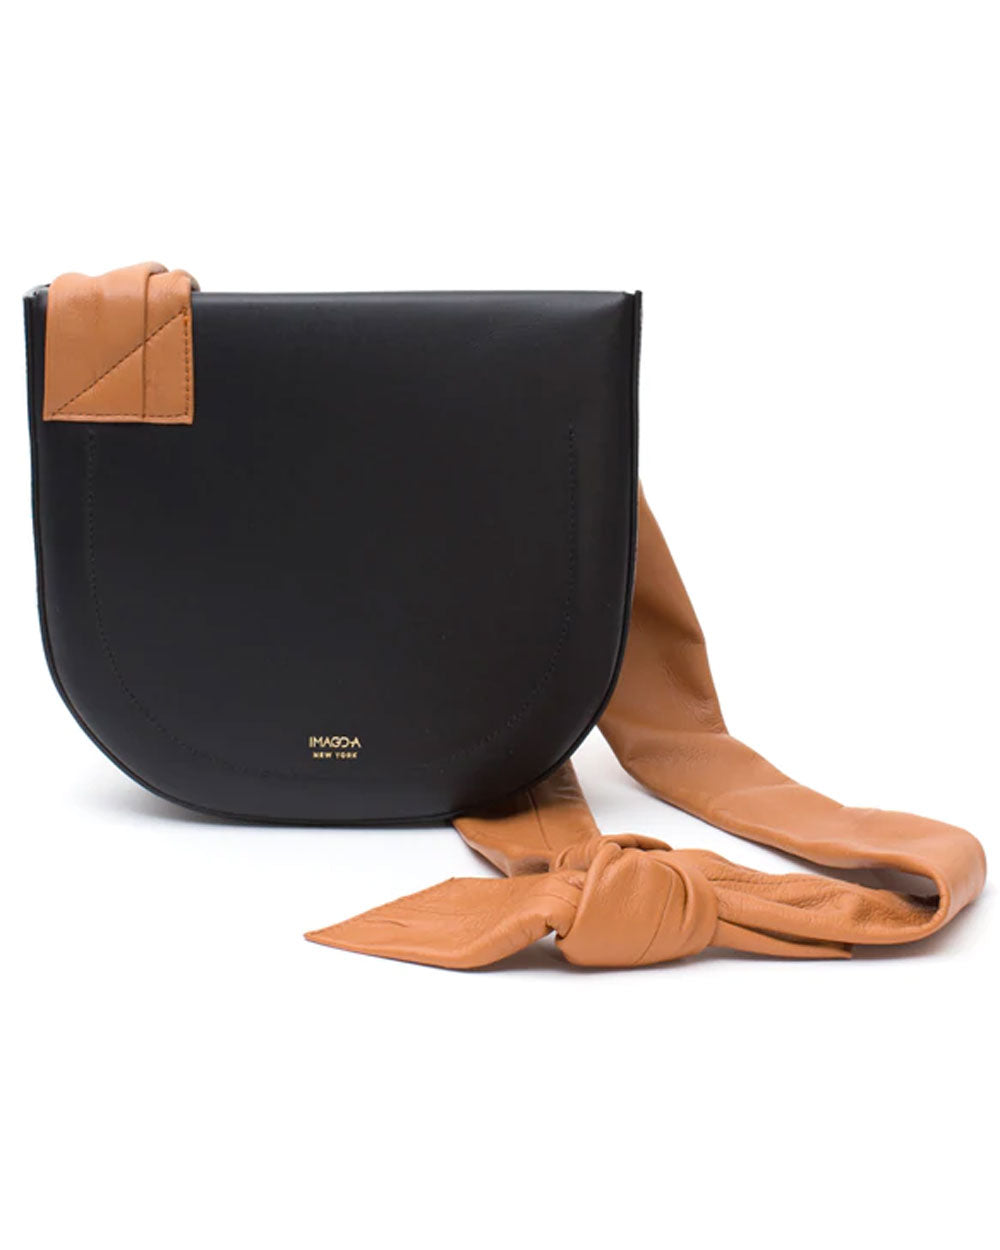 Georgia Handbag in Noir and Tan